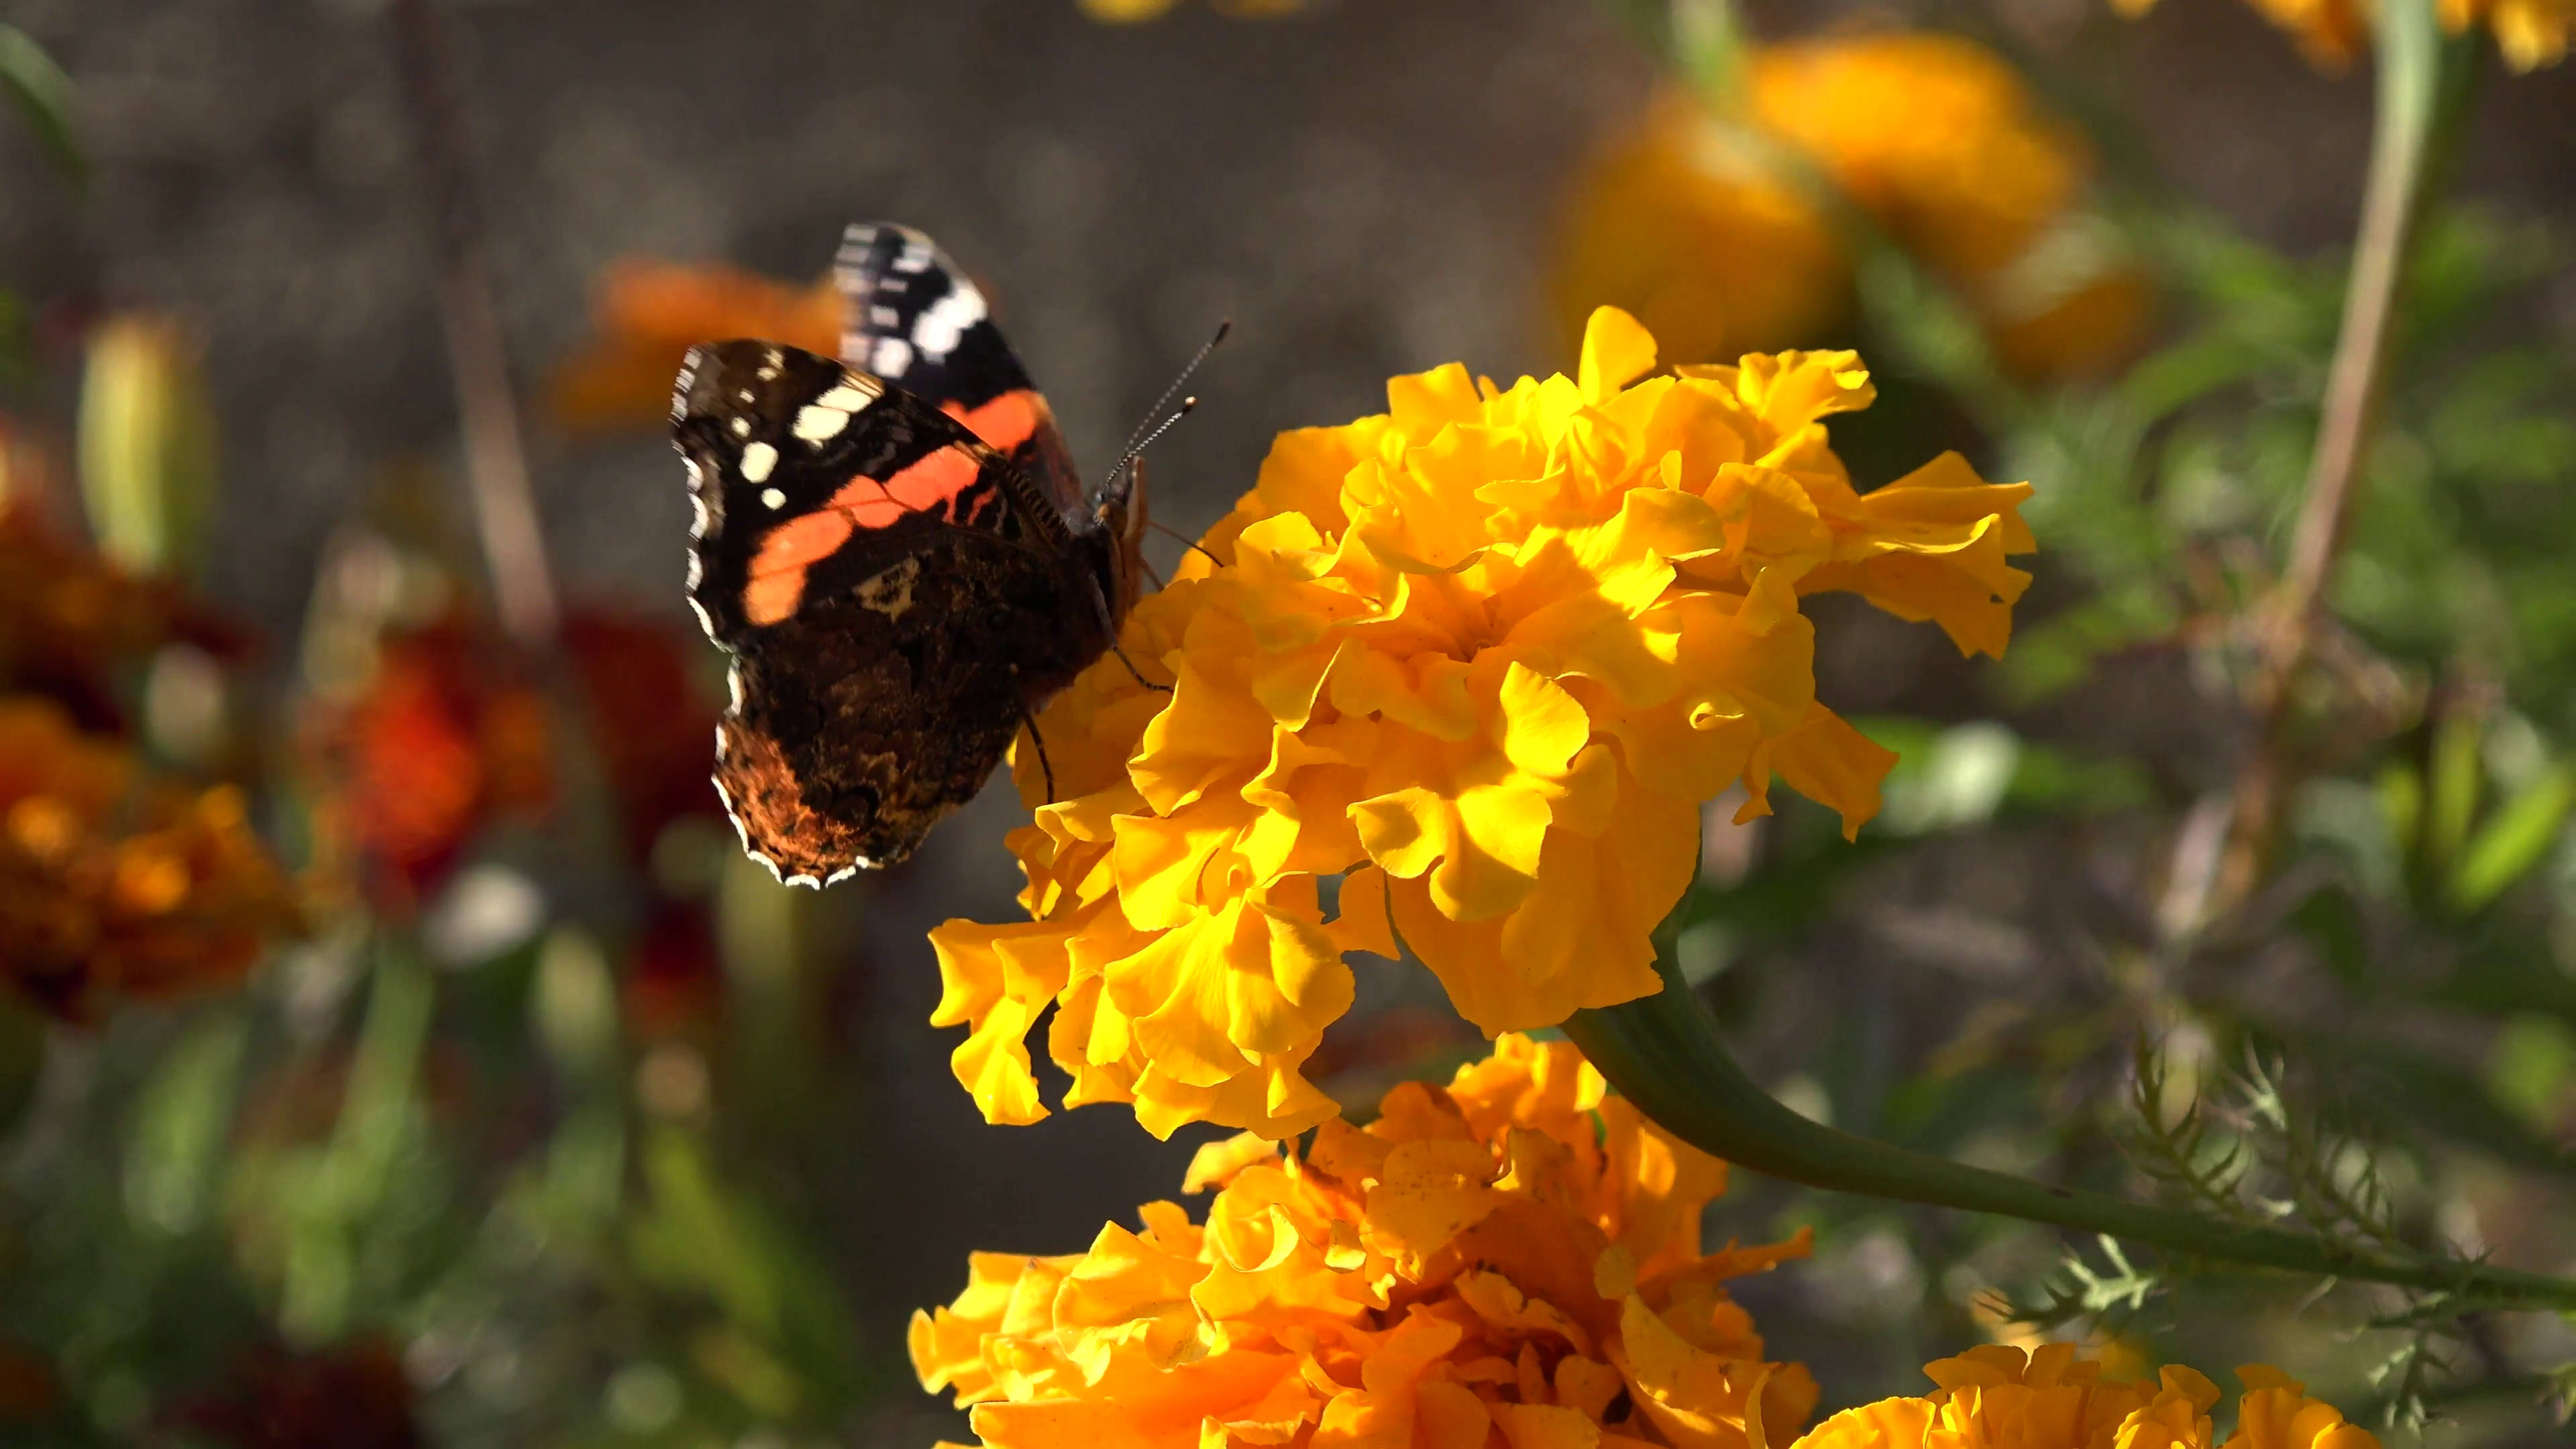 4K Butterfly on Chrysanthemum Flower in Field, Gathering Pollen in ...